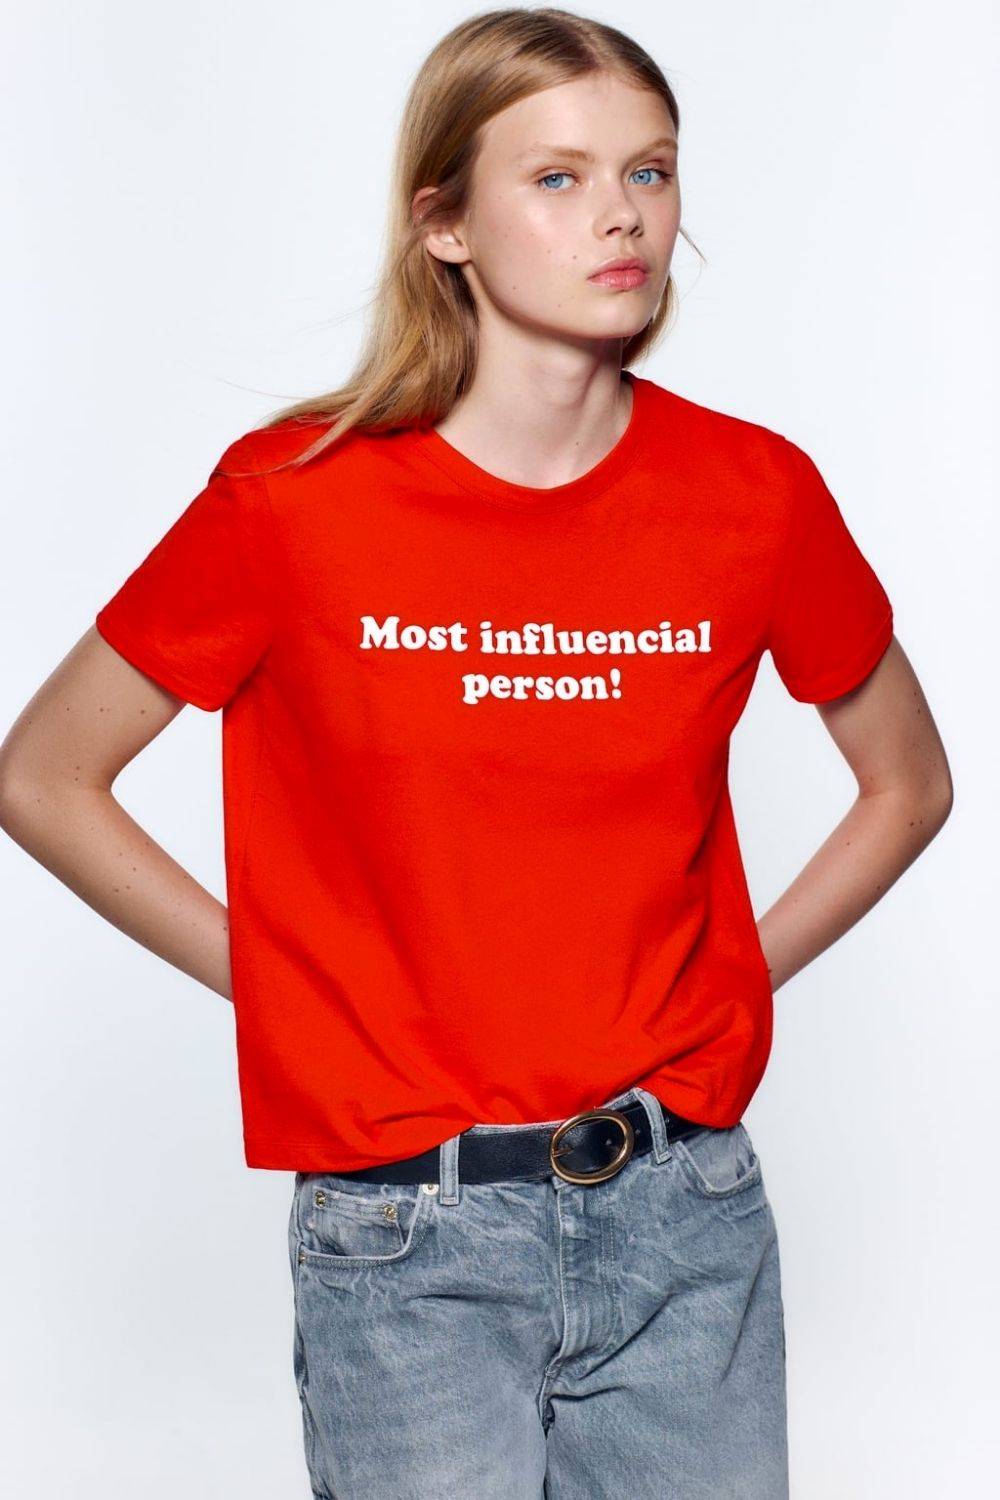 Camiseta roja con texto 